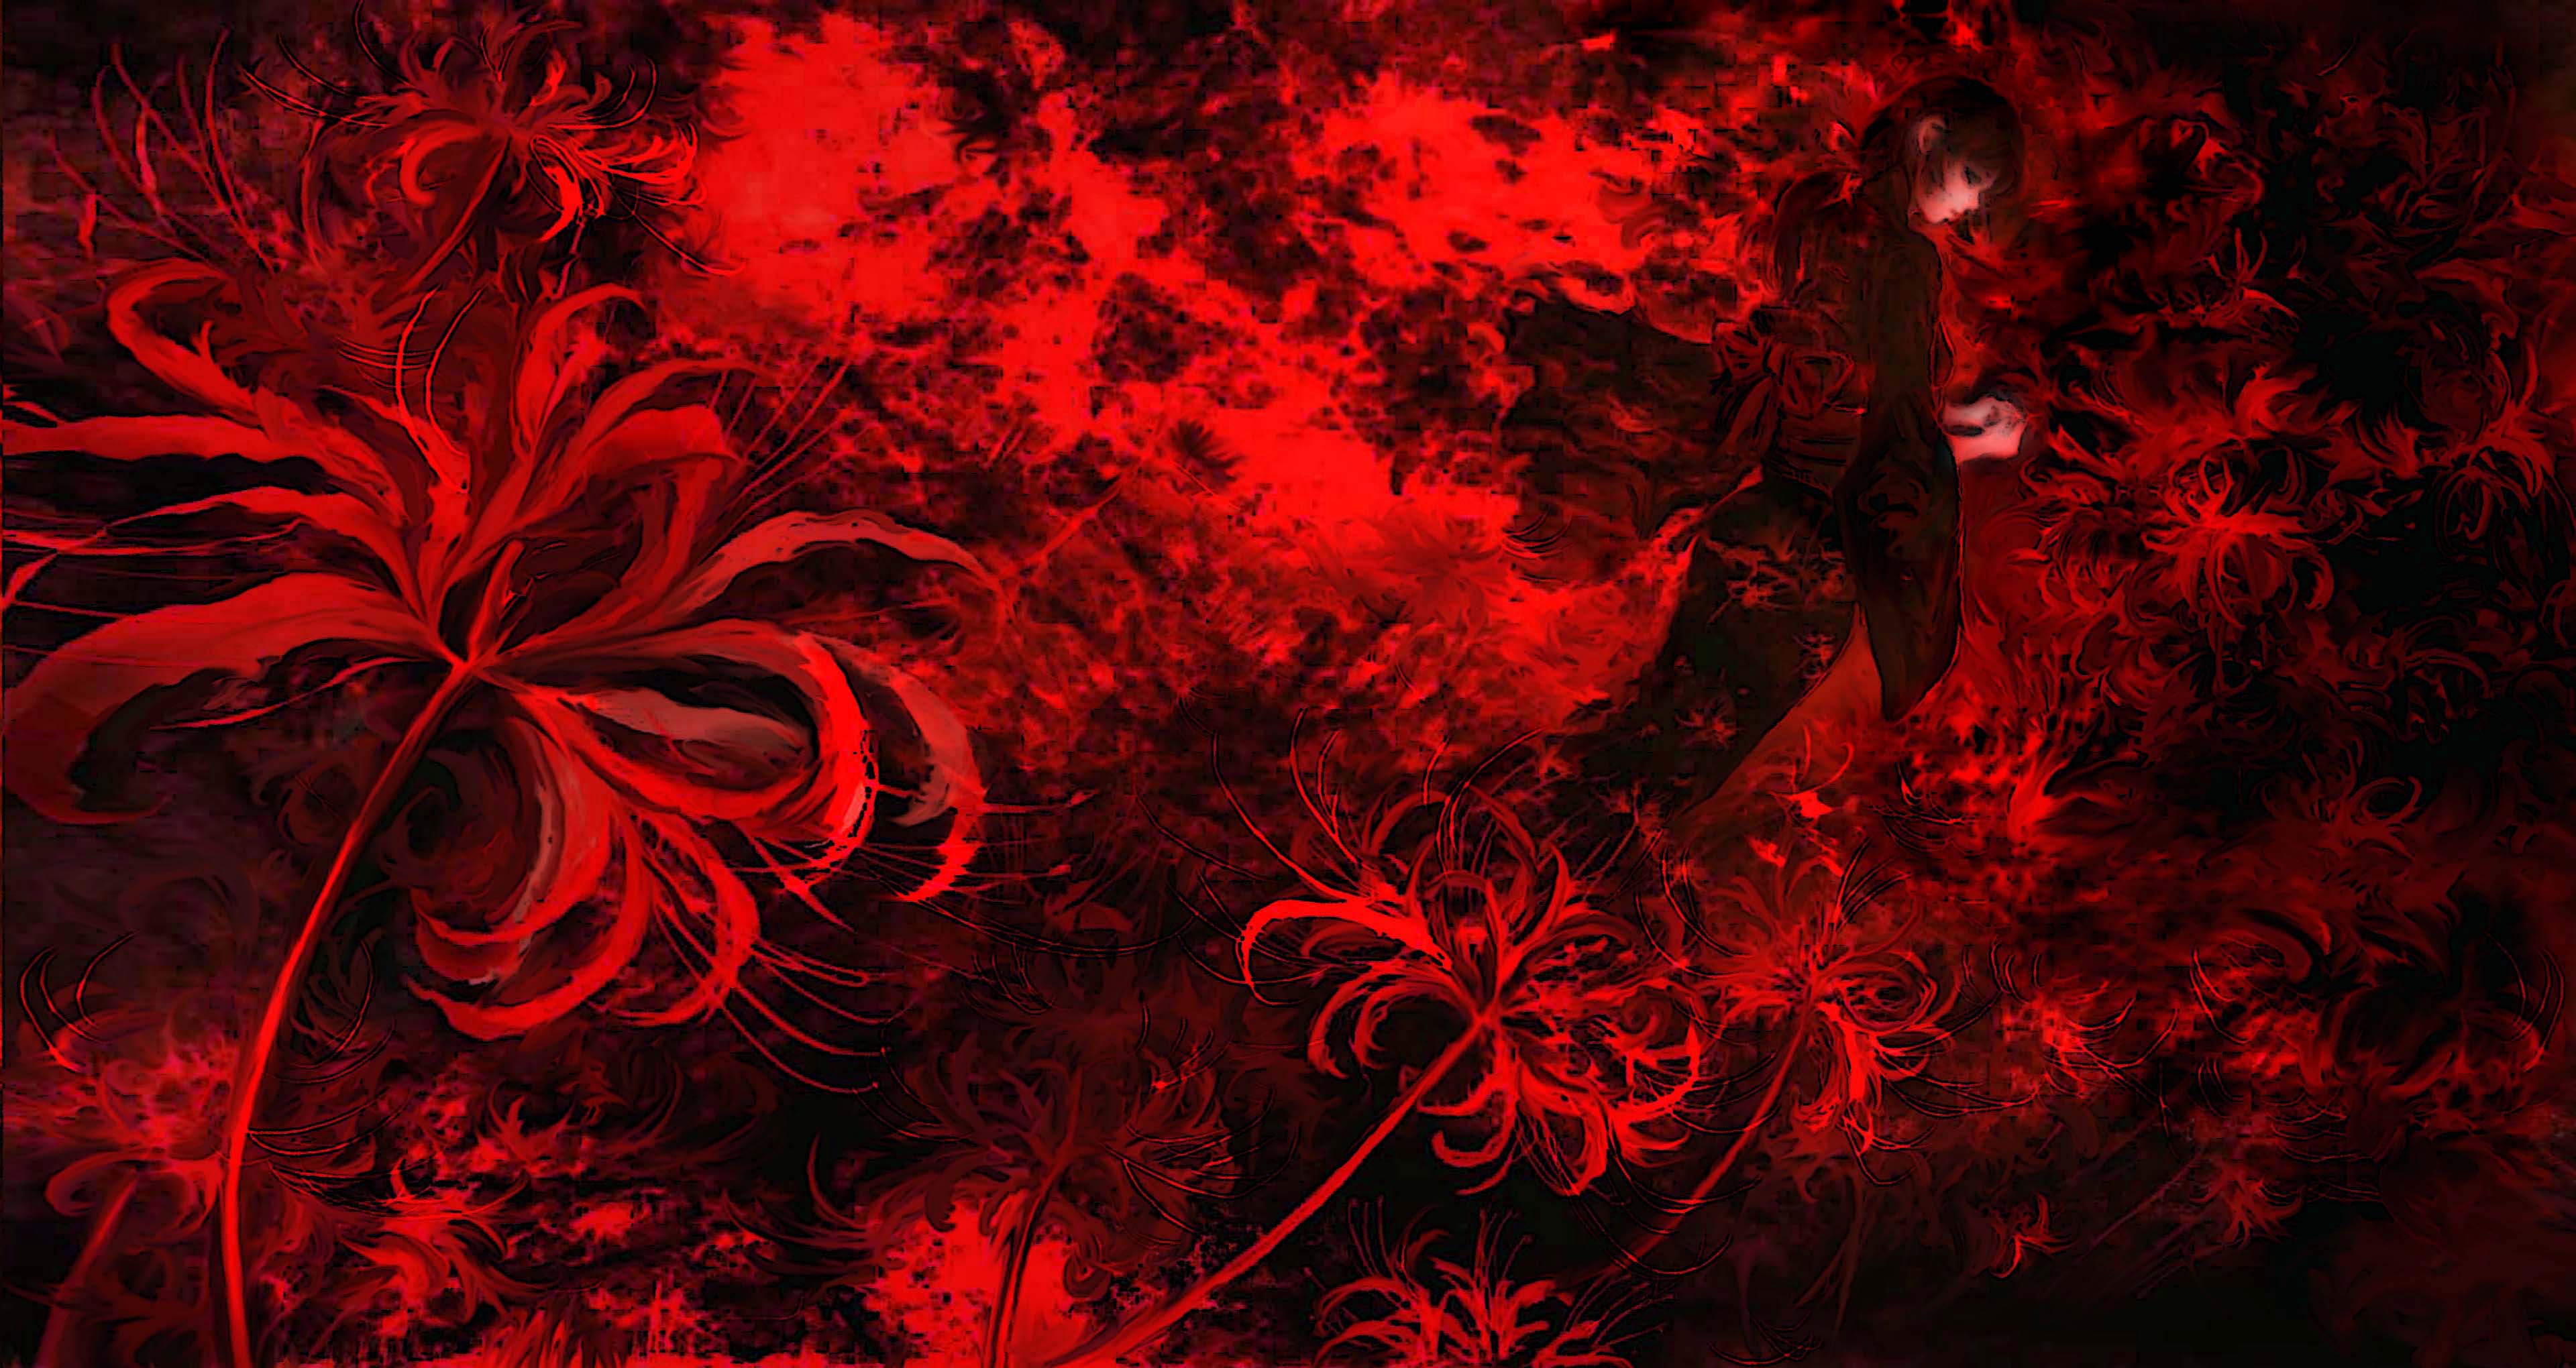 Красные цветы игры. Хиганбана (красная Паучья Лилия). Ликор ст окийский гуль. Хиганбана ликорис Токийский гуль. Хиганбана ликорис поле.